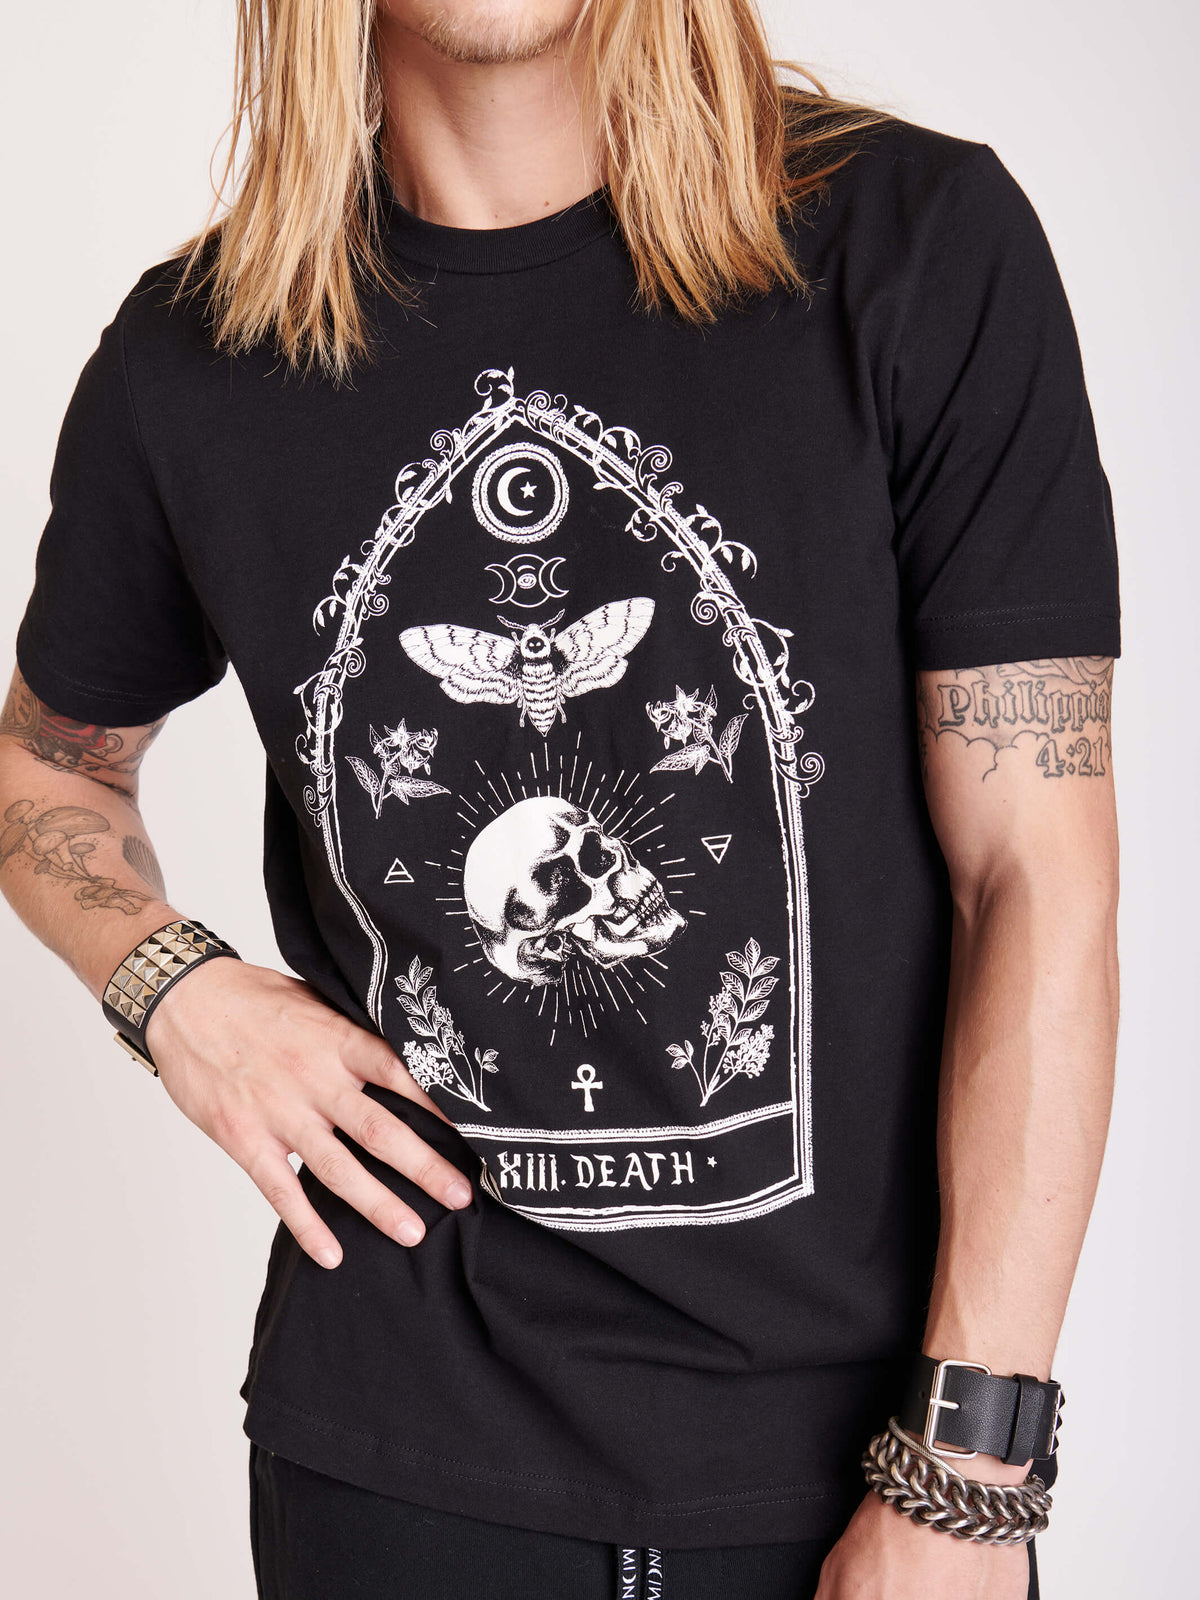 Skull Tarot card t-shirt. 